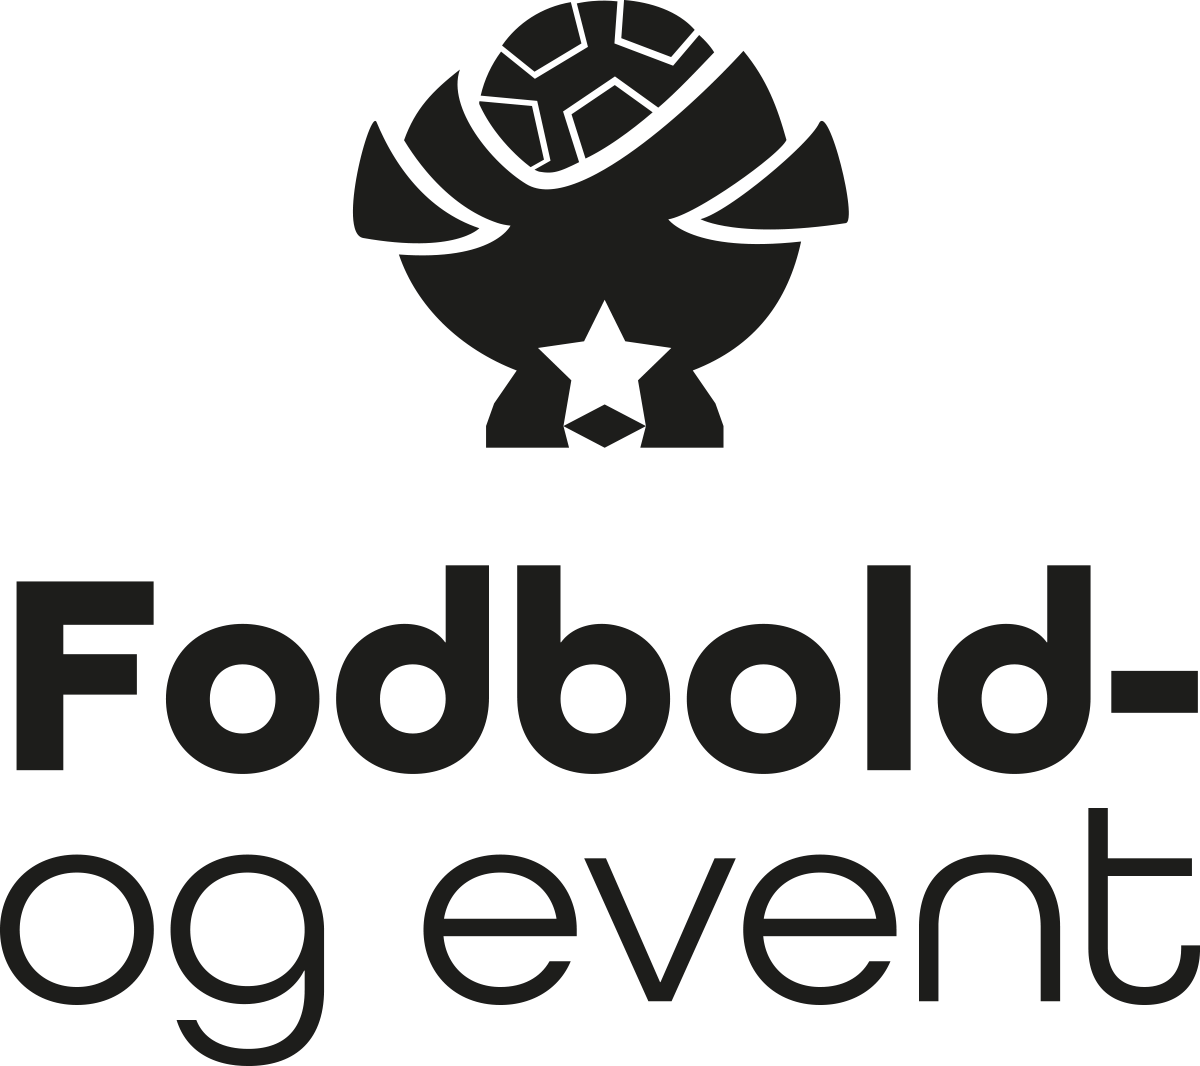 FODBOLD FARTMÅLER og event